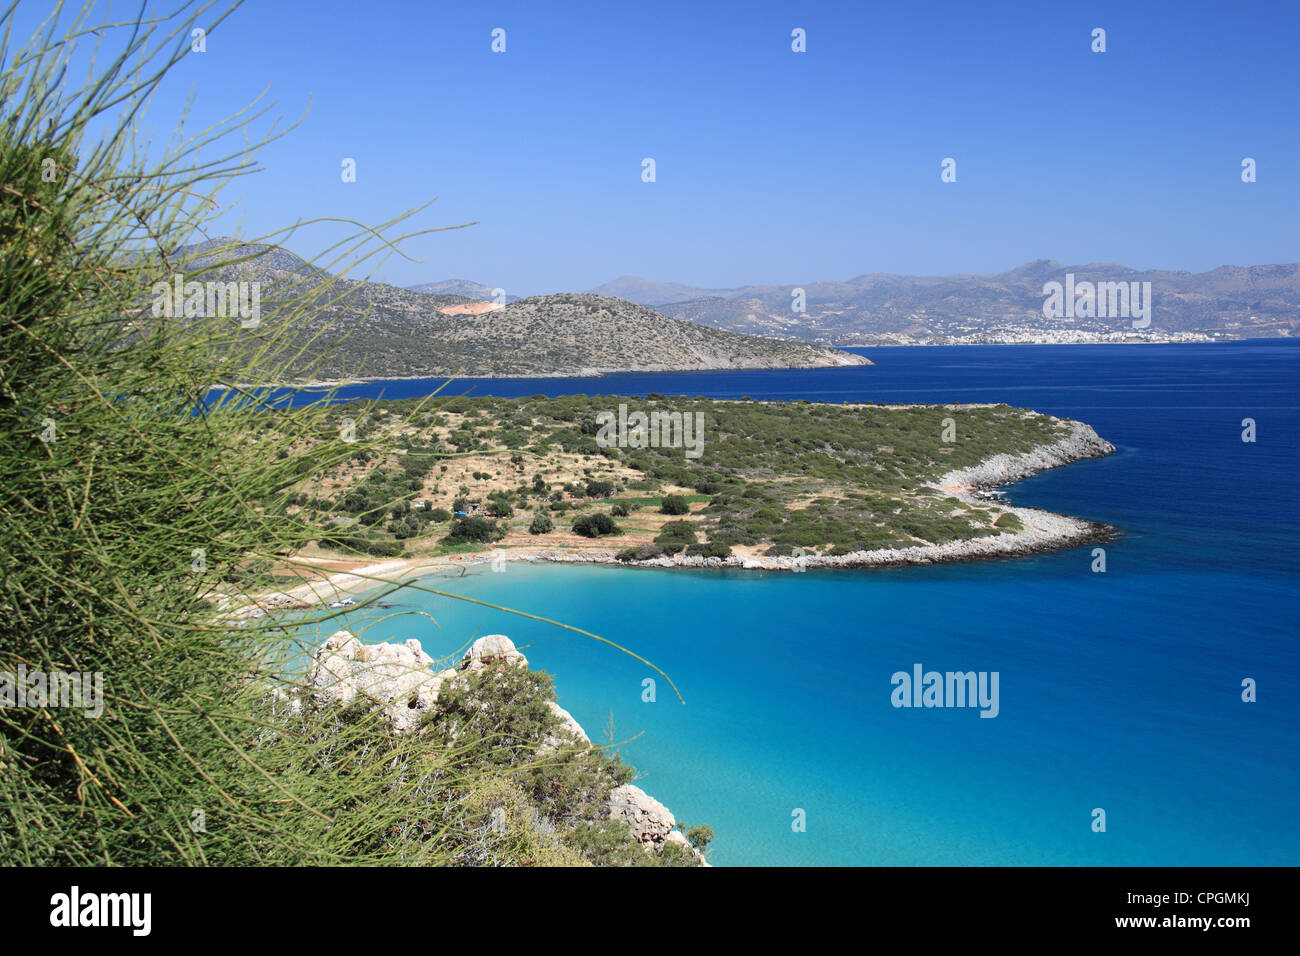 Istron Kalo Horio, Agios Nikolaos, Golfe de Mirabello, Lassithi, Crète, Grèce, Méditerranée, Europe Banque D'Images